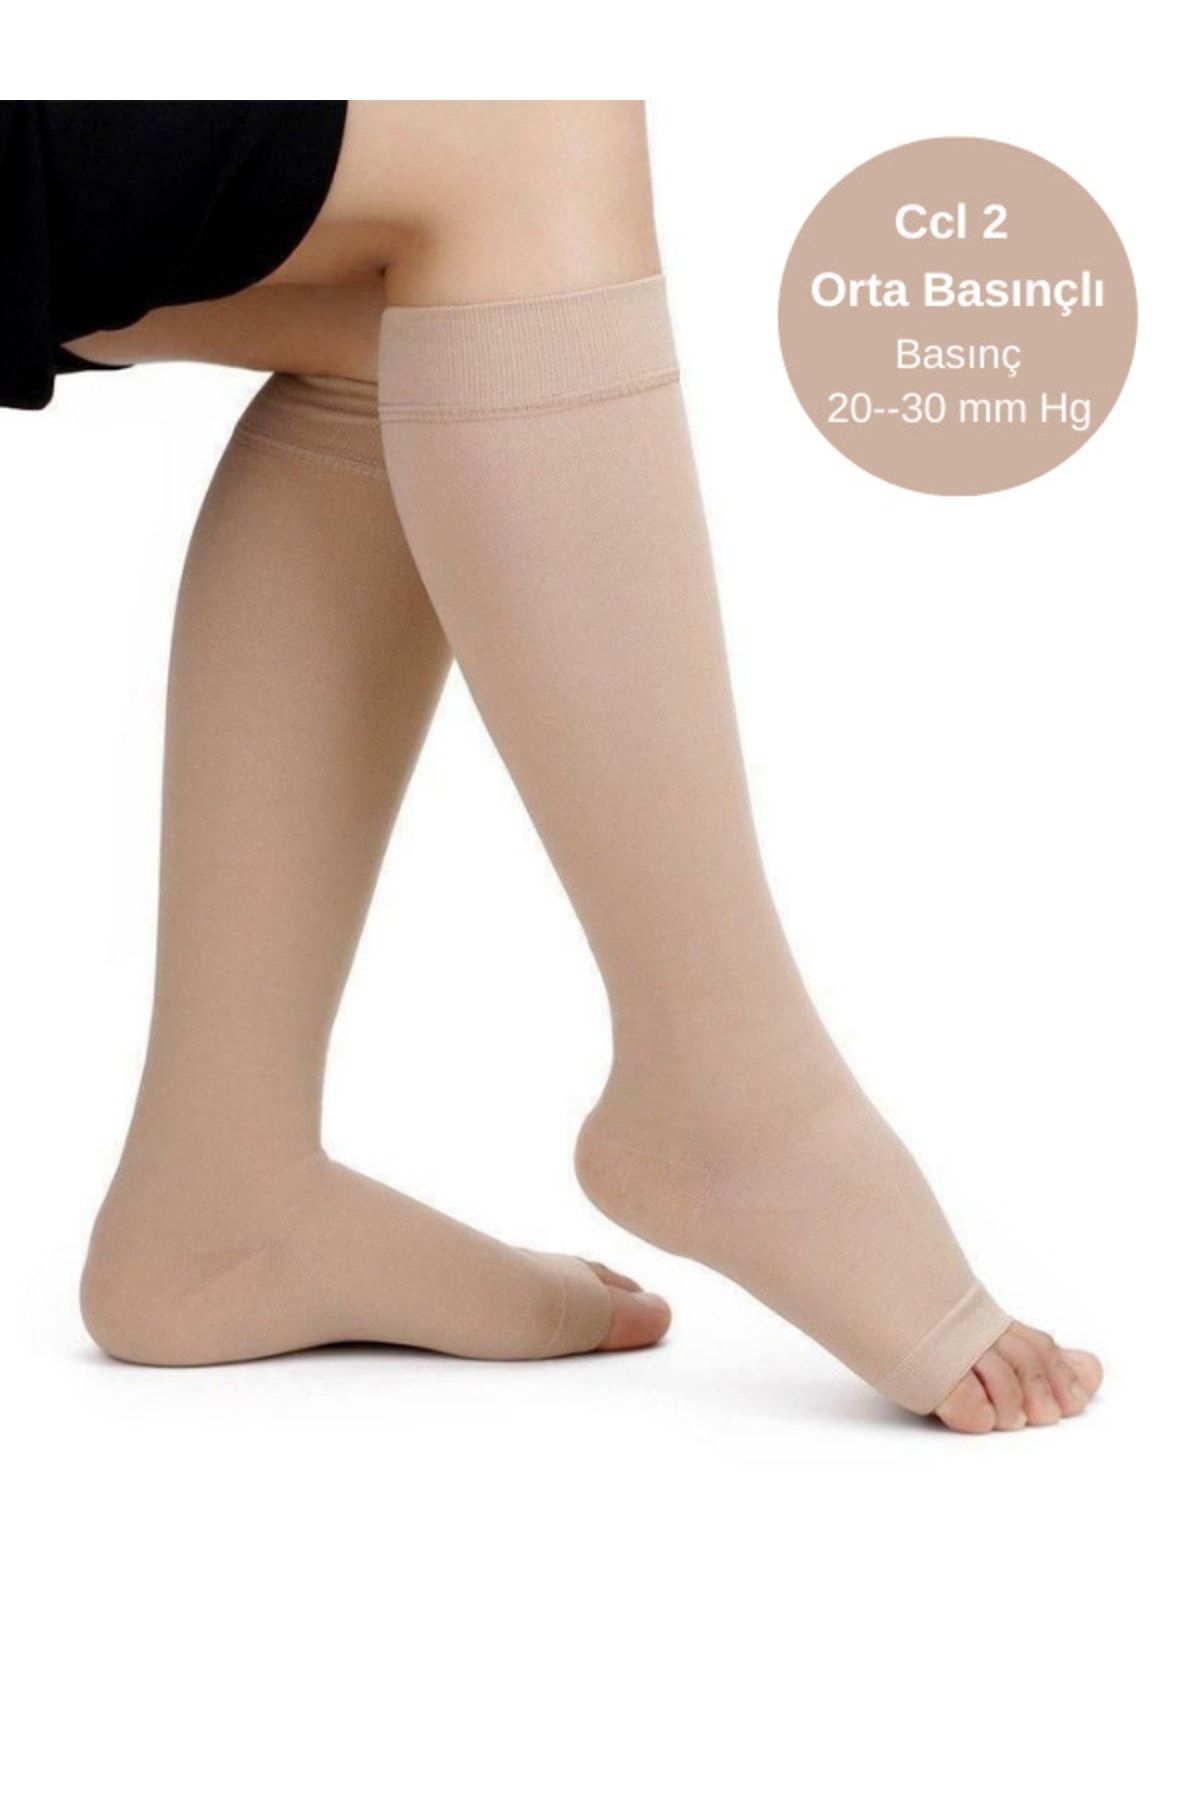 ZeyMer Diz Altı Çorabı, Orta Basınç (CCL-2) 20-30 Mmhg, Bej Renk, Açık Burun